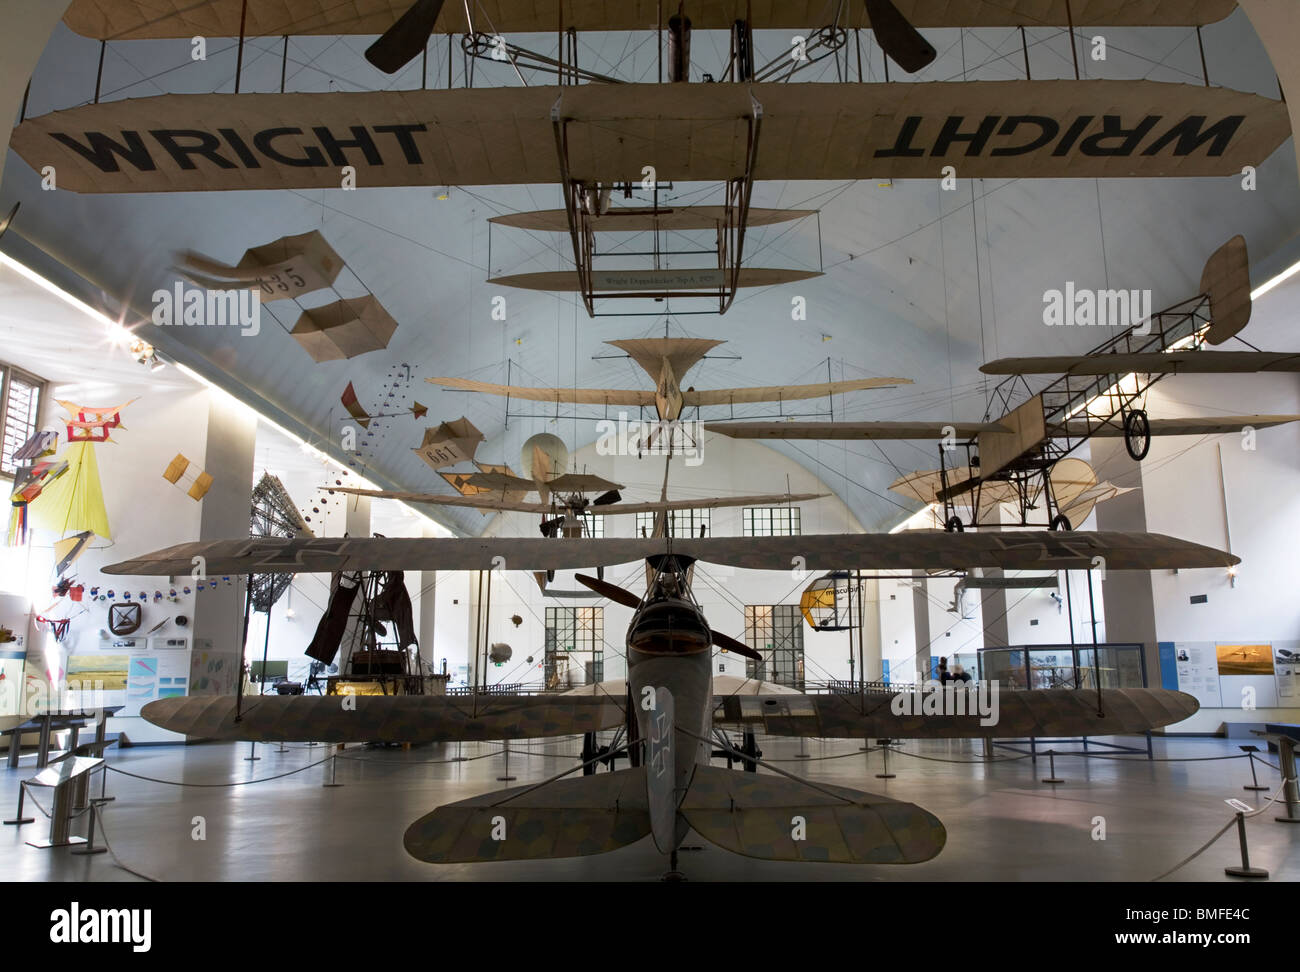 Début des machines volantes avec les frères Wright premier biplan flyer 1902 Kitty Hawk, le Deutsches Museum, Munich, Allemagne Banque D'Images